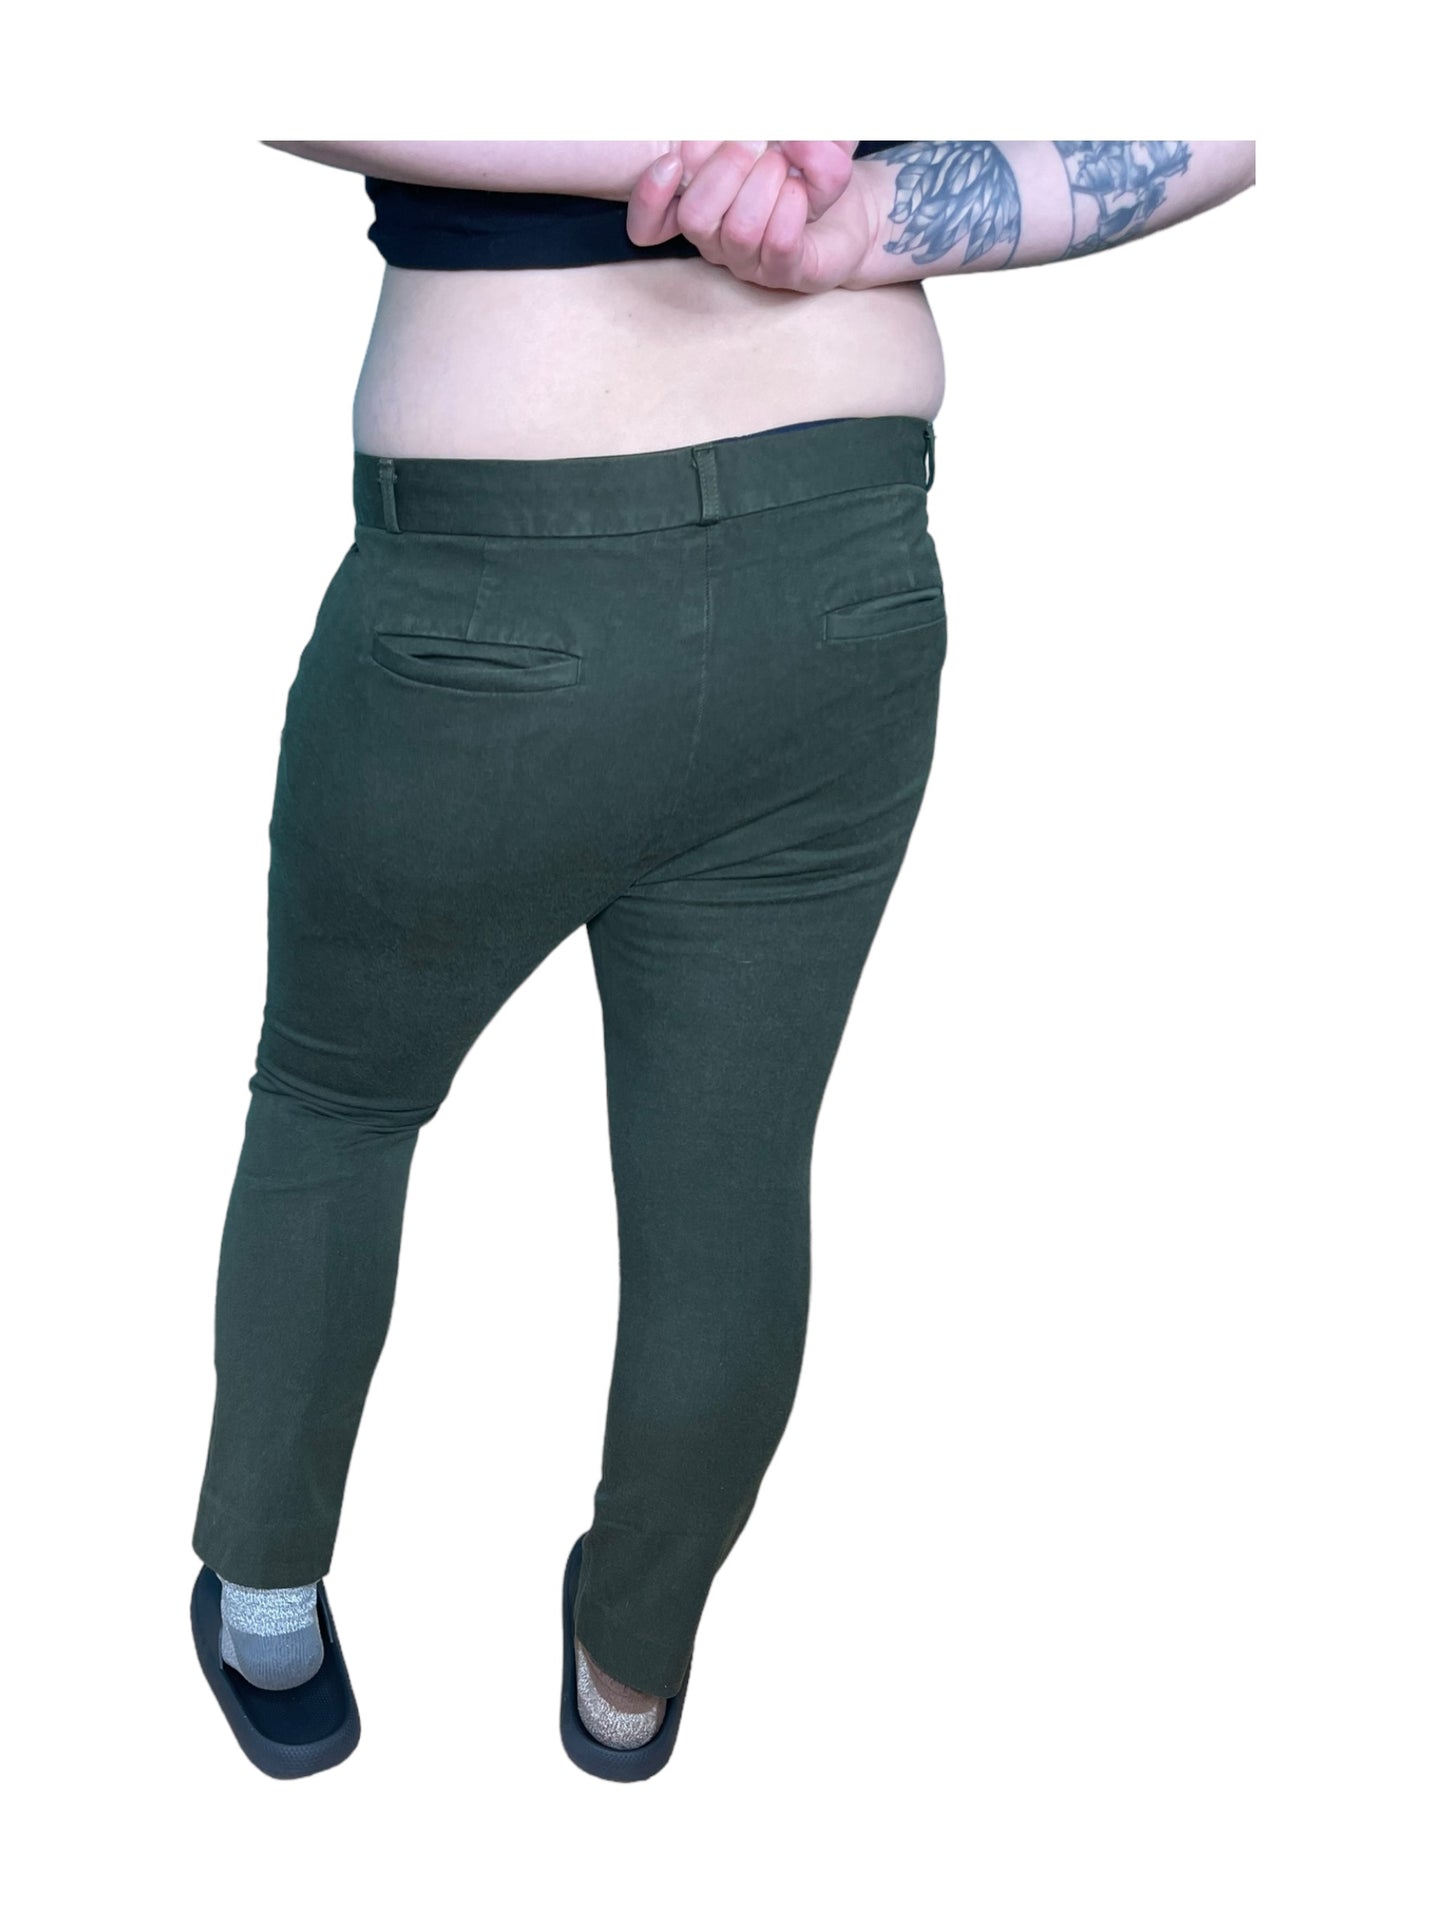 Olive Green Dress Pants (14)